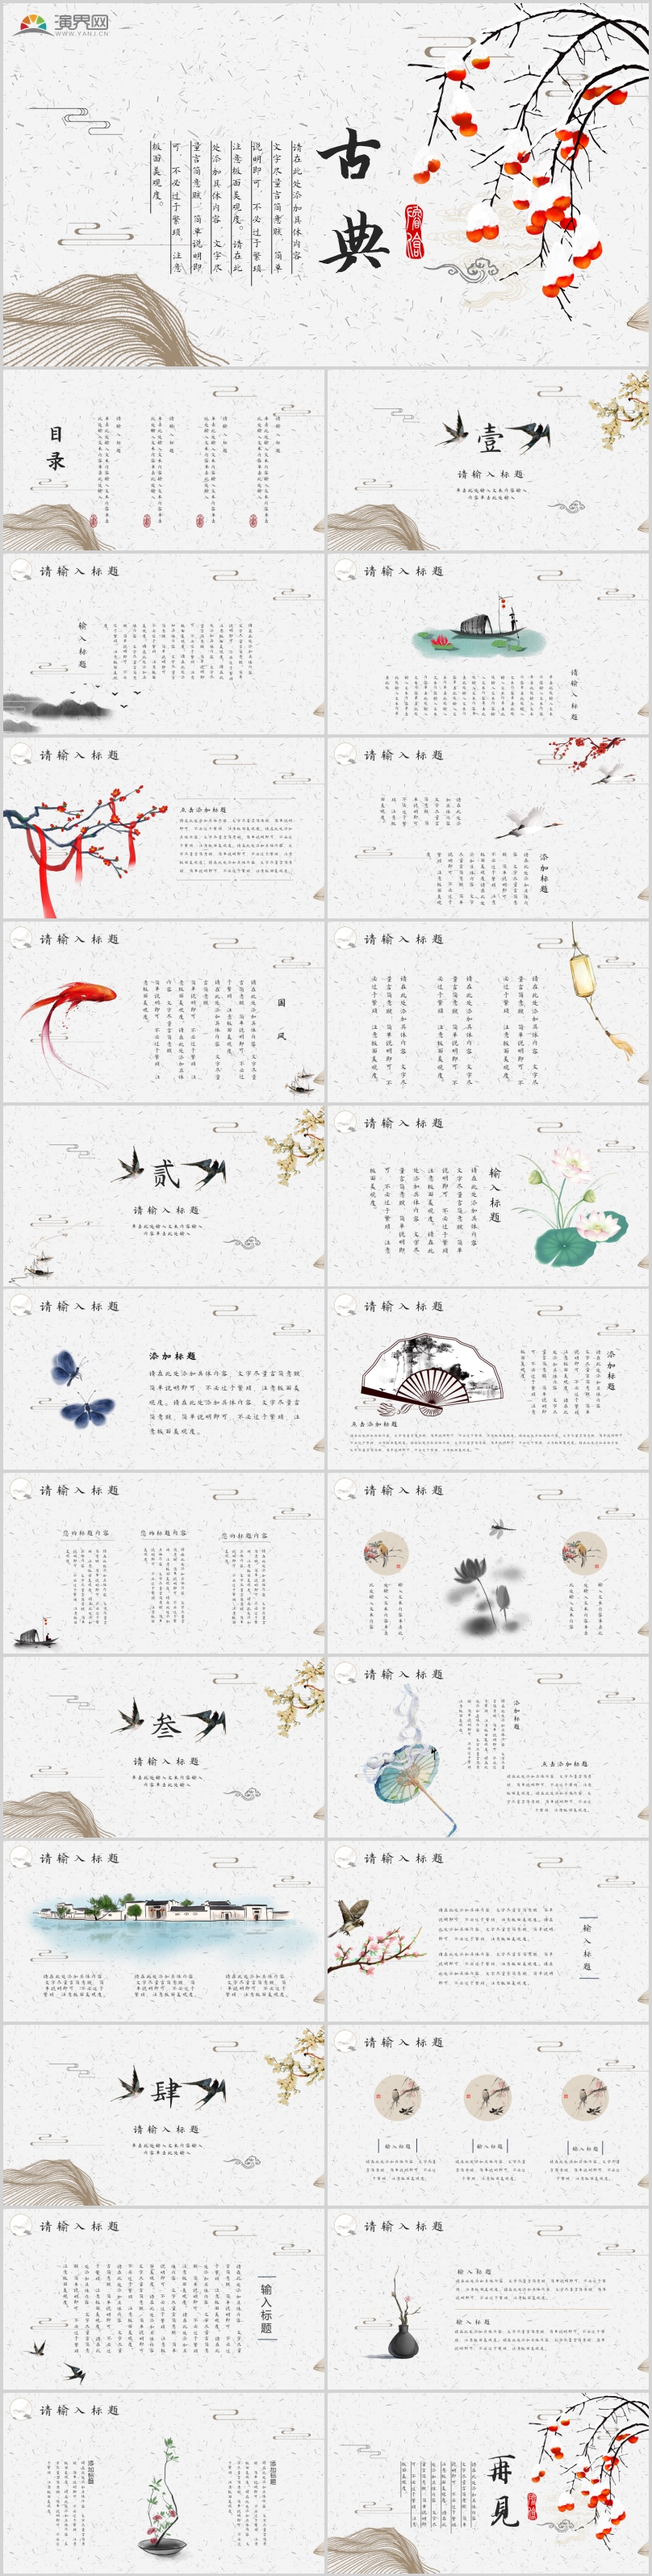 作品标题:唯美古典中国古风ppt模板